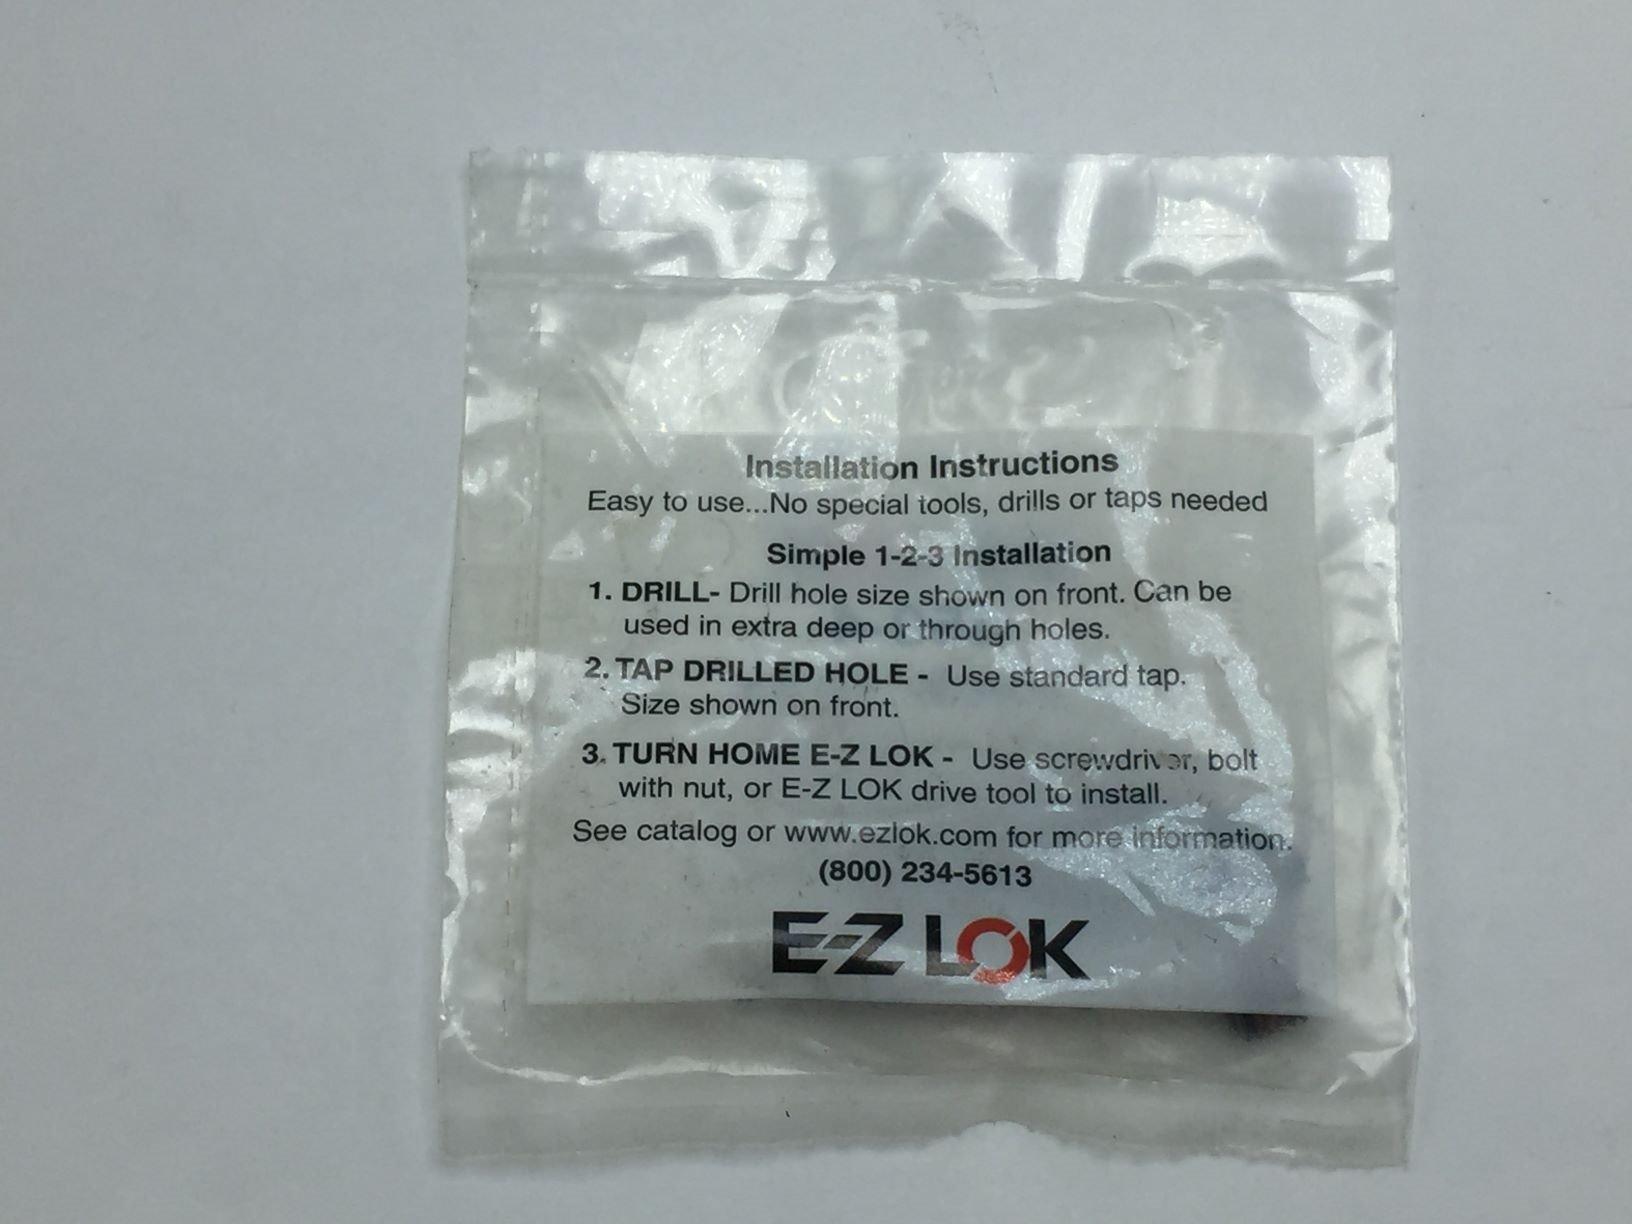 NEW E-Z LOK 450-4 NEW E-Z LOK THREADED INSERT 1 PACK OF 10 M4-0.7 x M8-1.25 